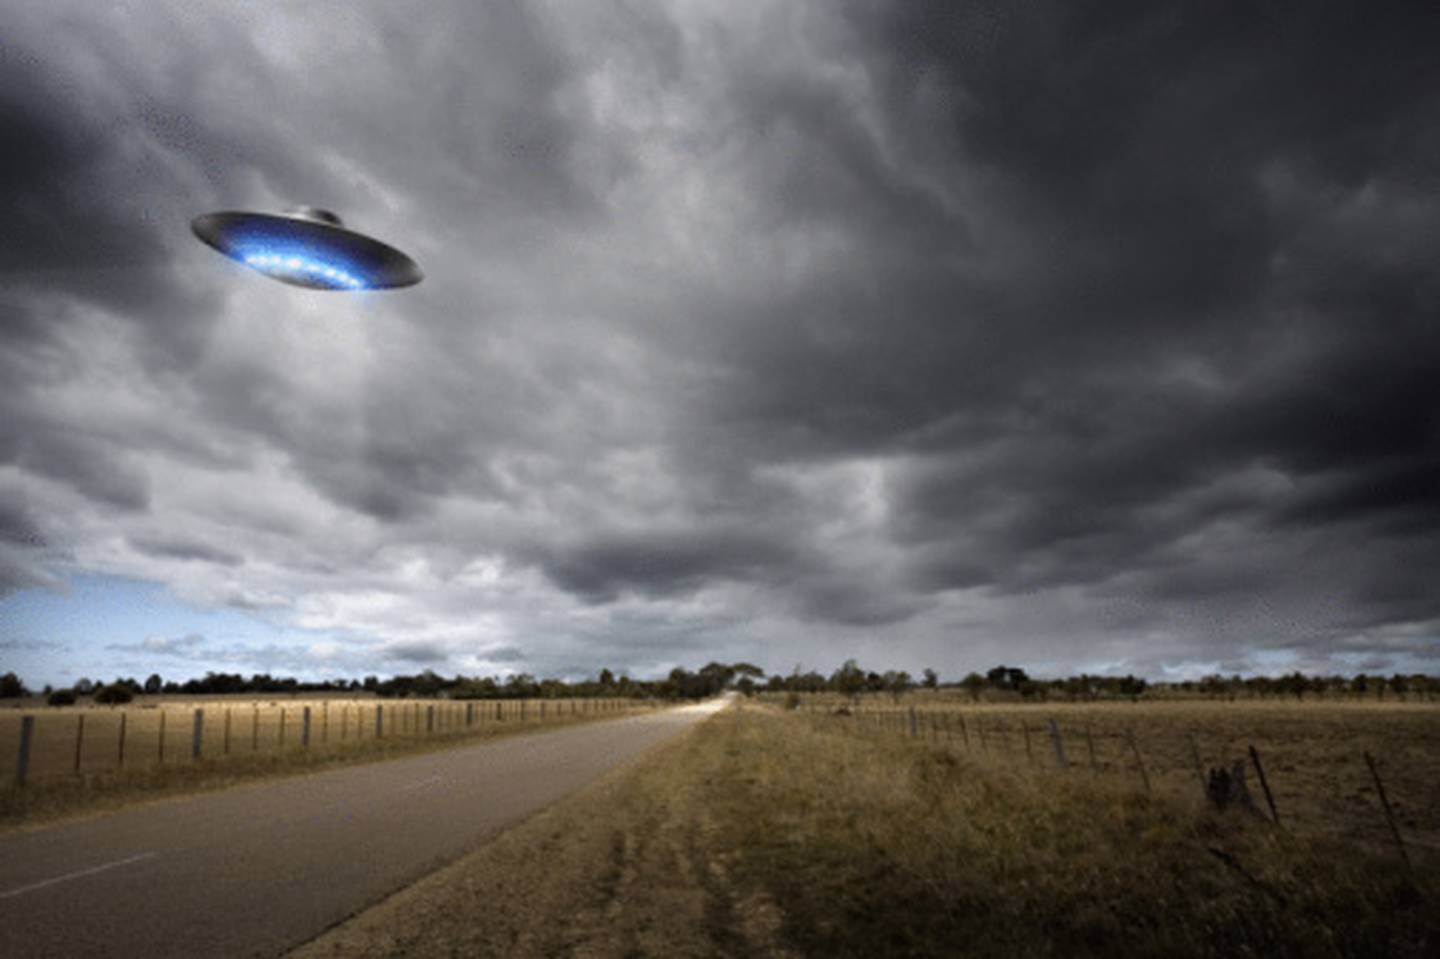 O Pentágono ofereceu informações atualizadas sobre a busca por OVNIs enquanto procuram vida extraterrestre.